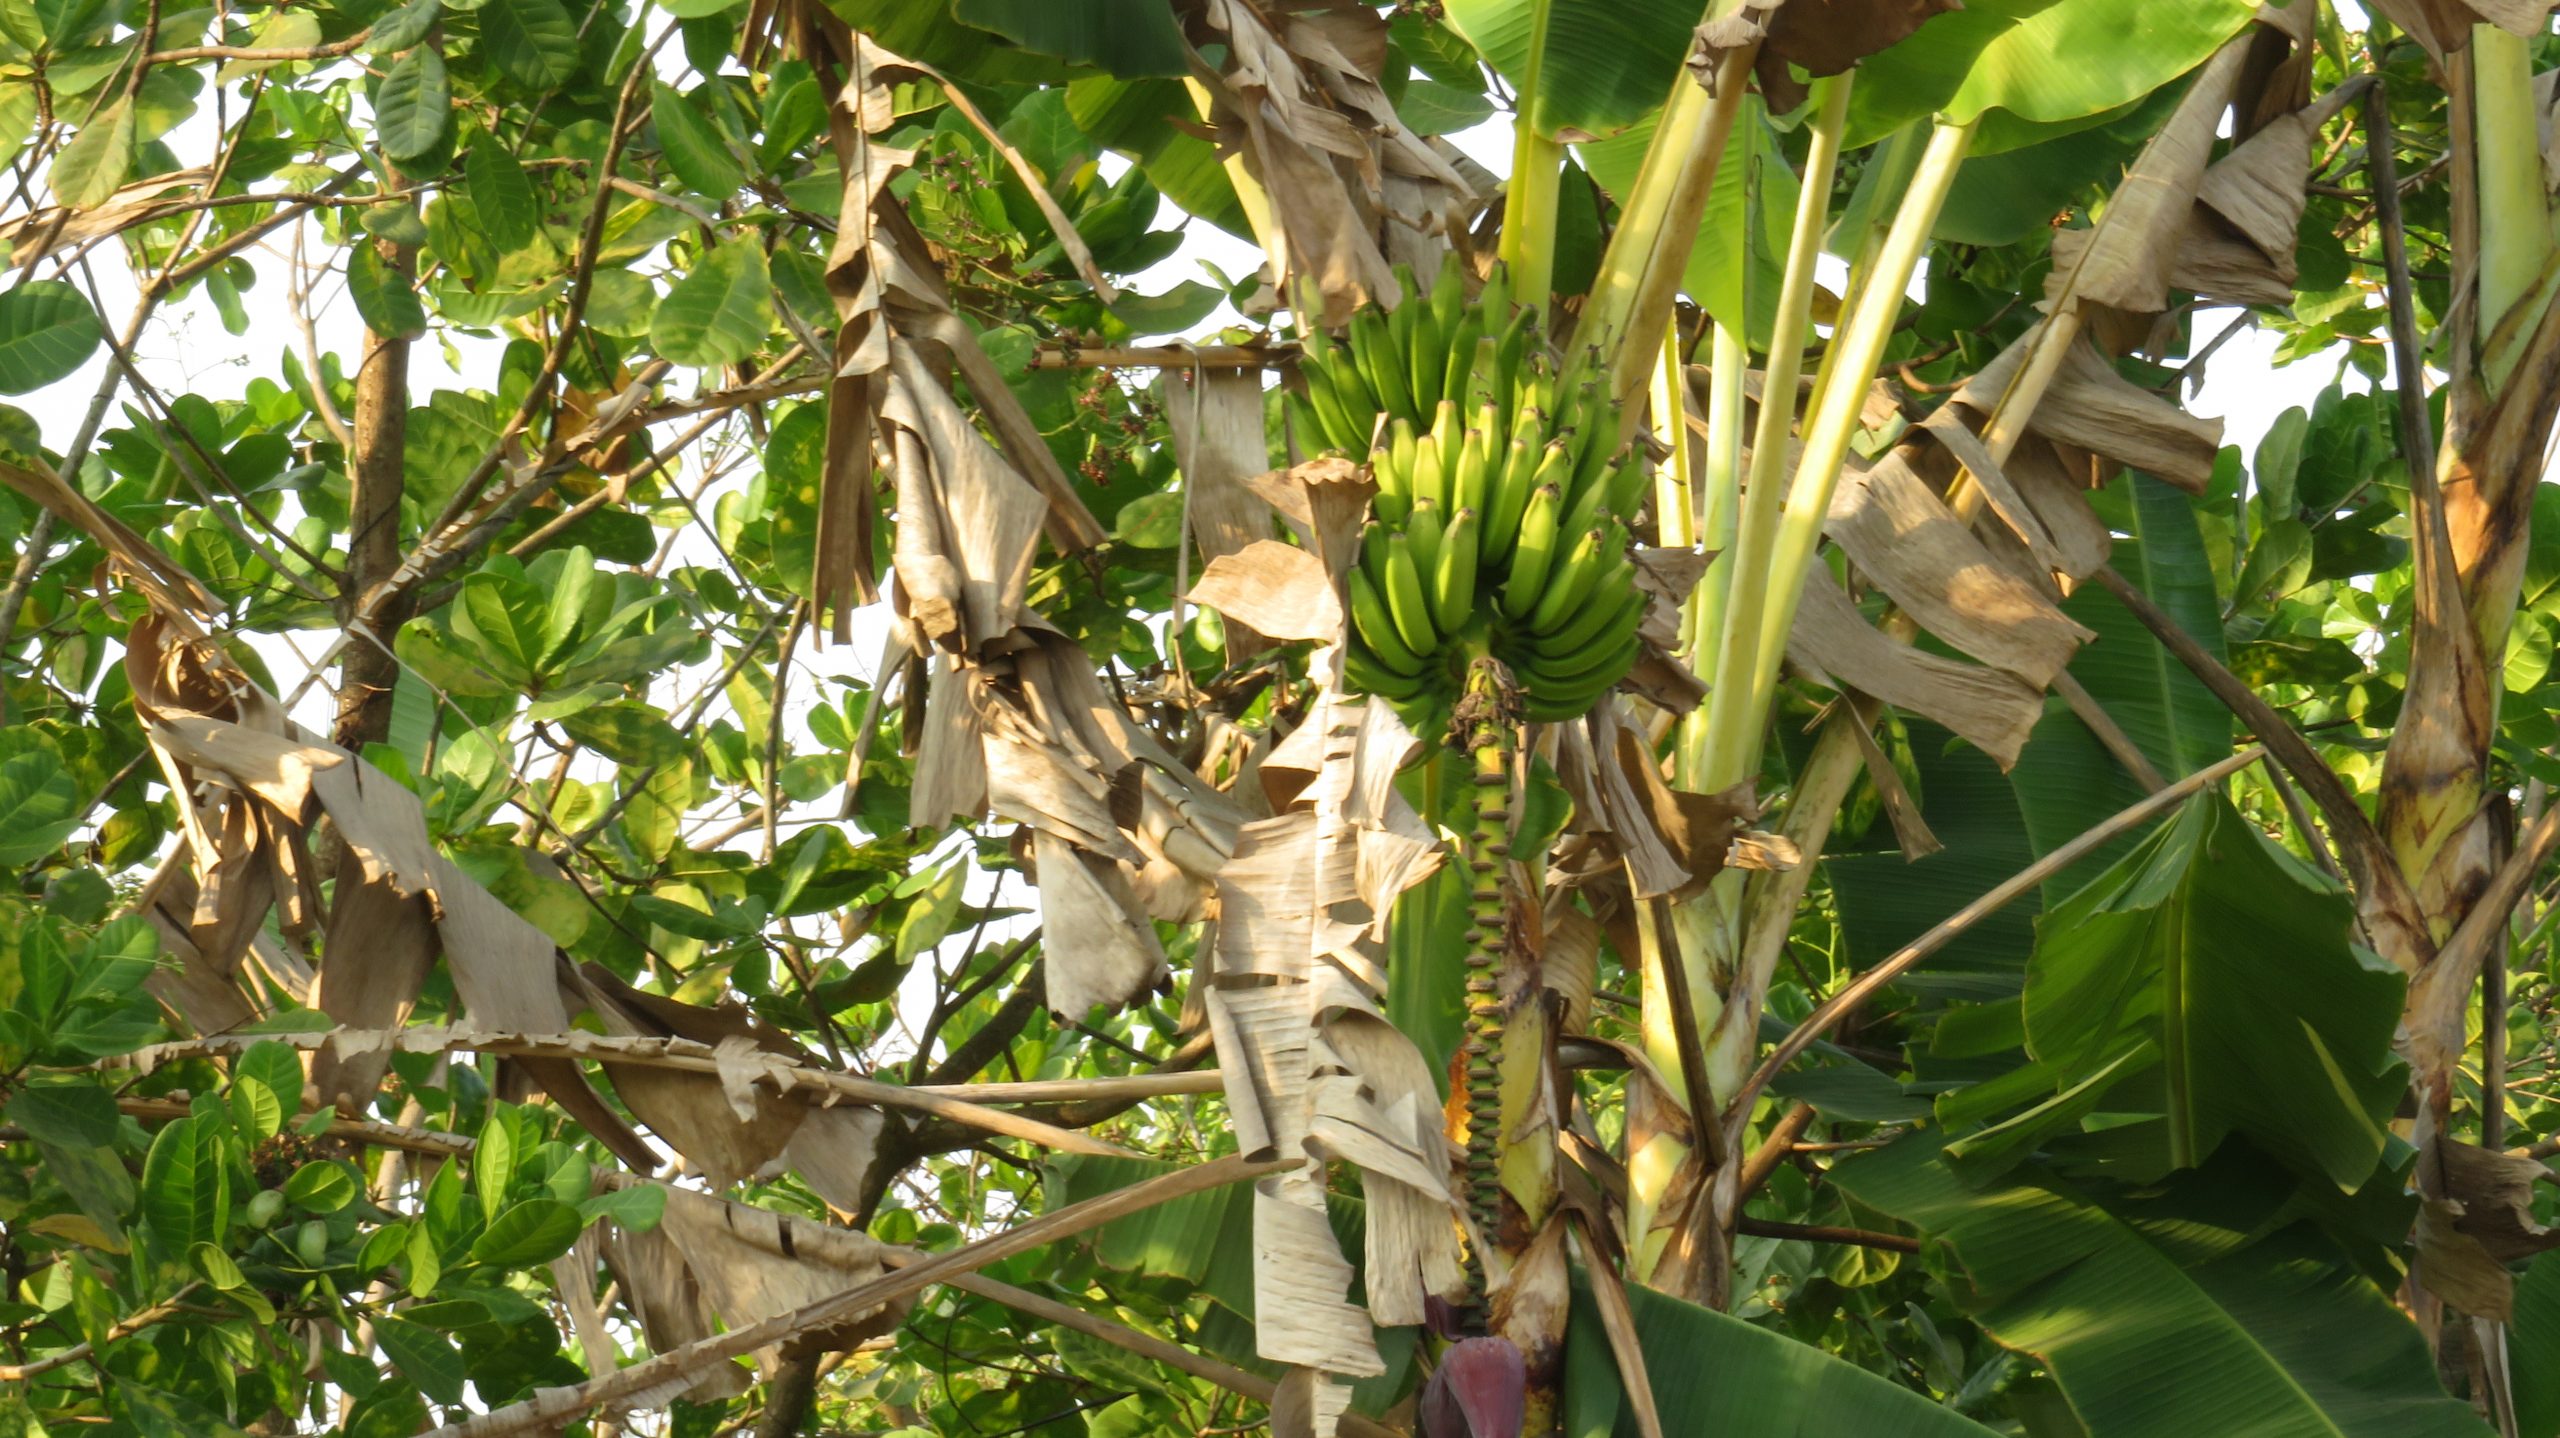 Banana Fruit in the Banana Tree